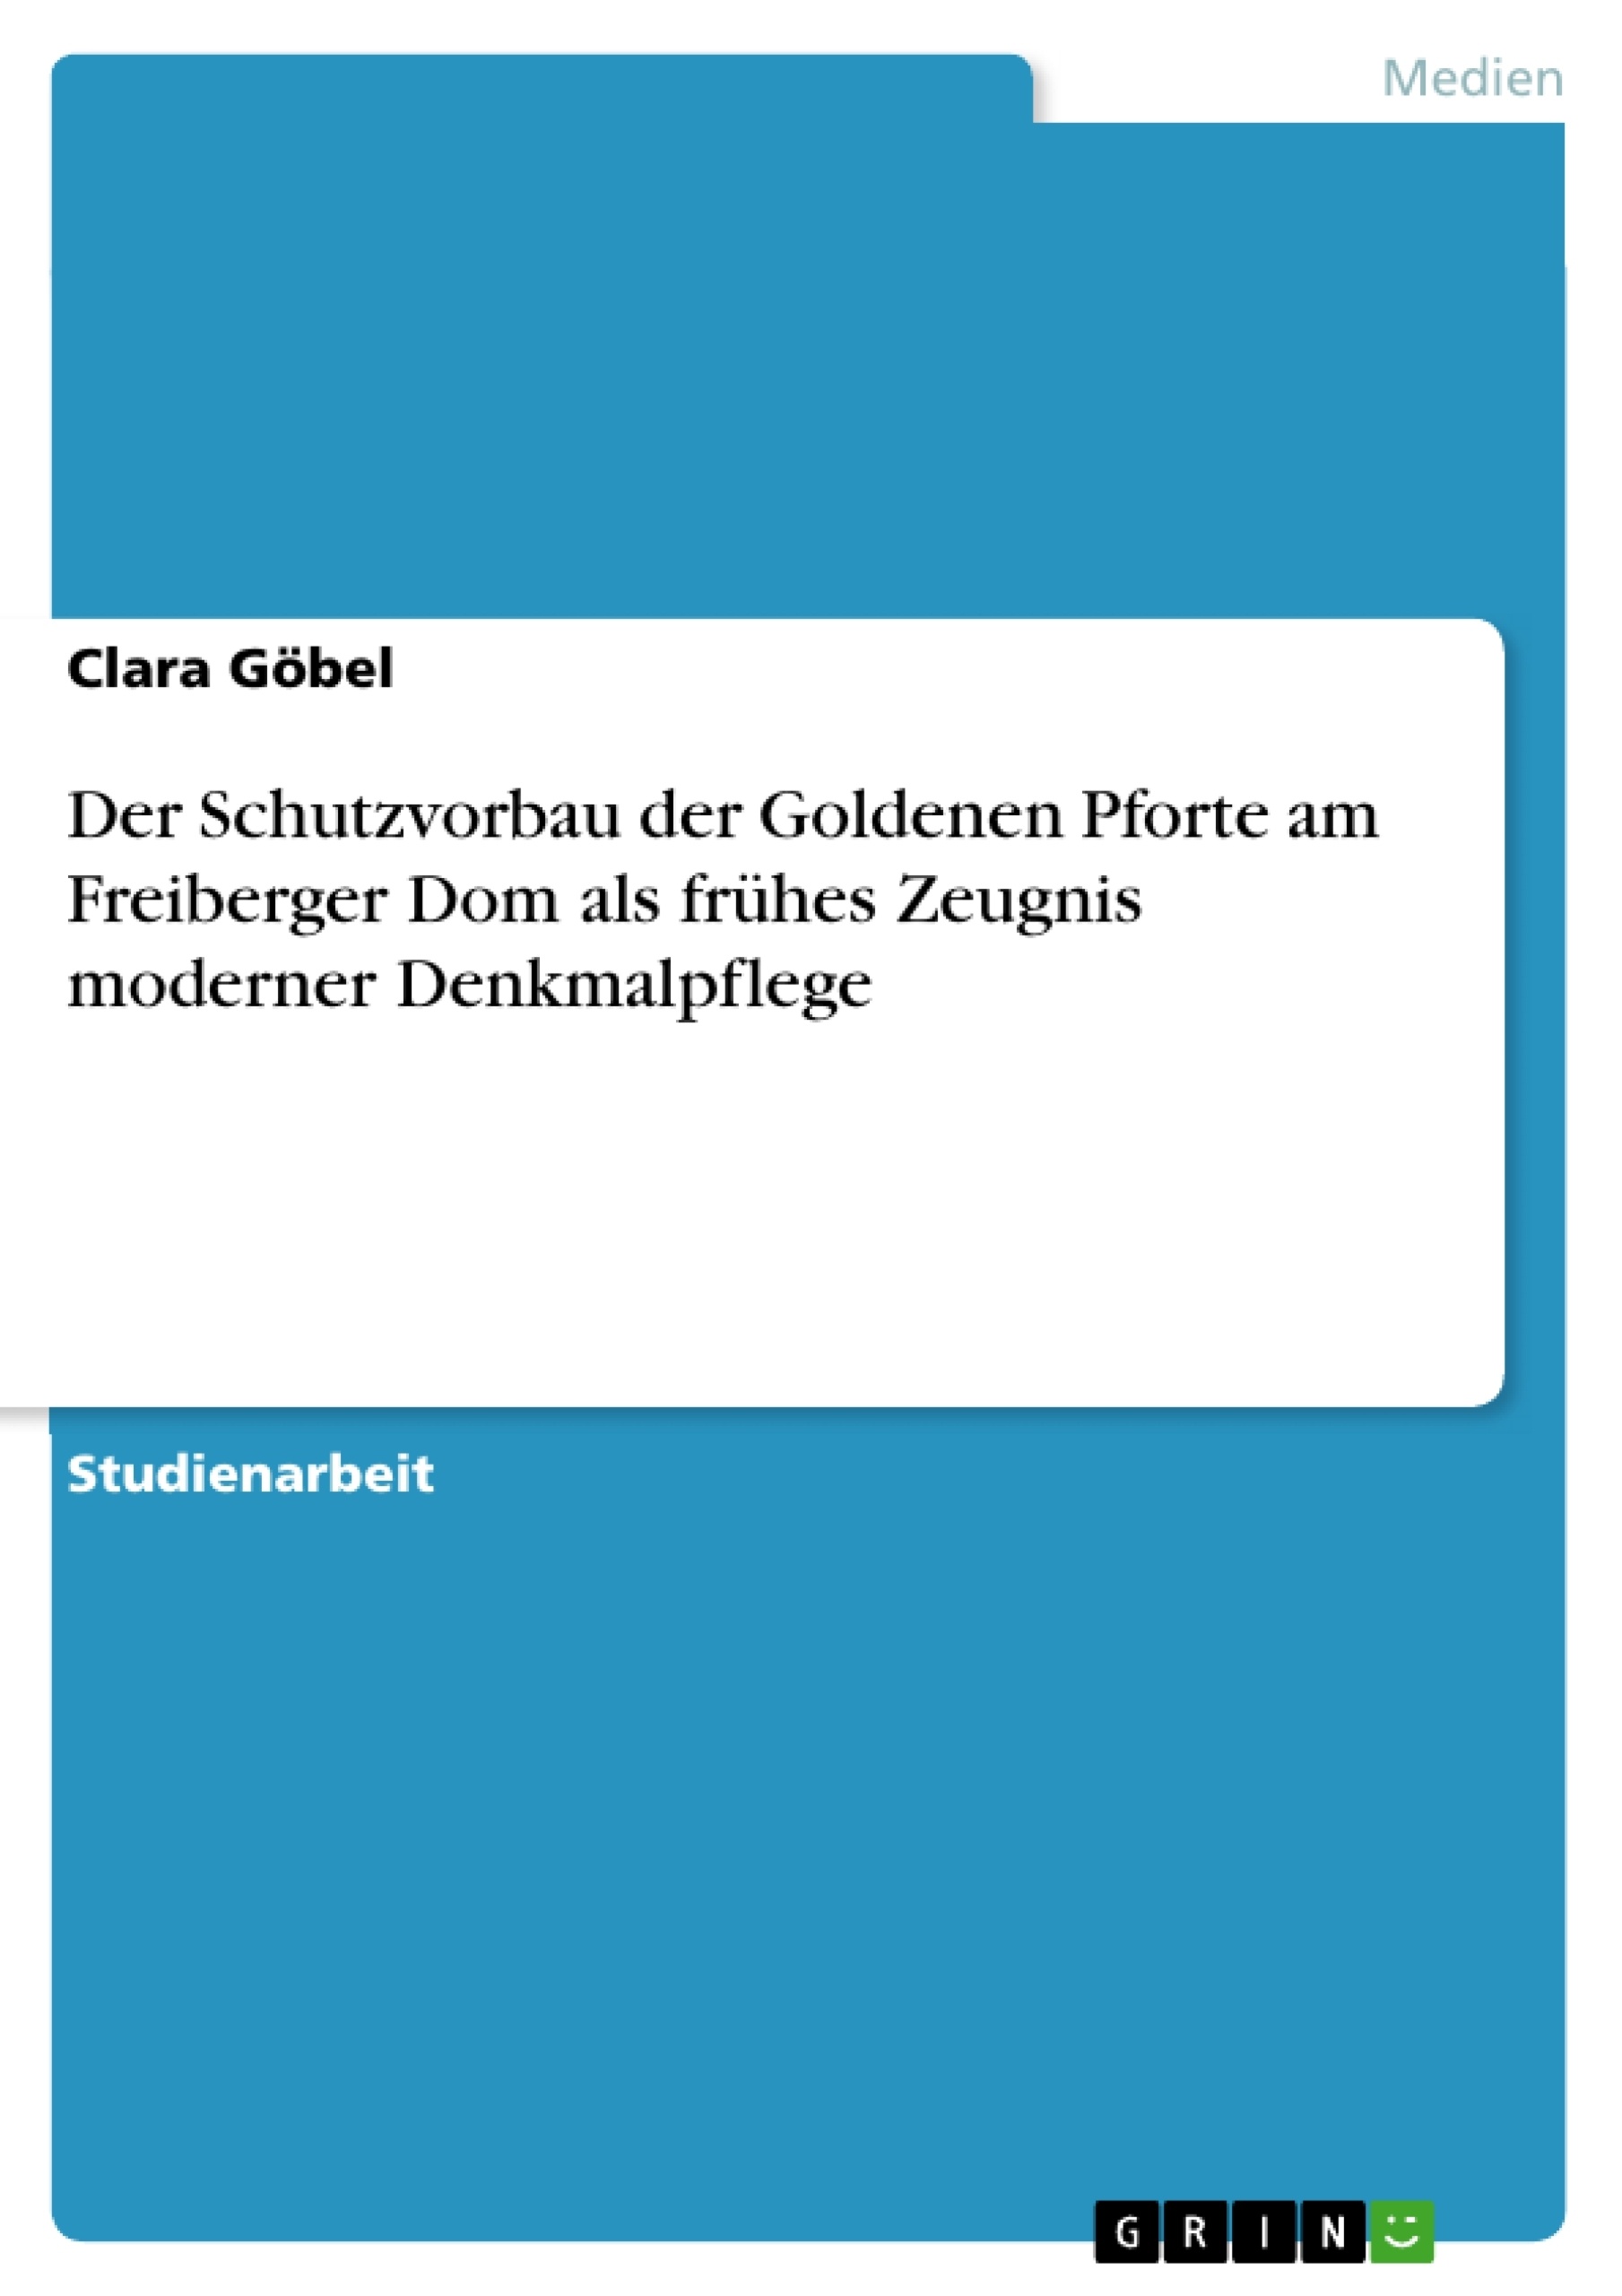 Title: Der Schutzvorbau der Goldenen Pforte am Freiberger Dom als frühes Zeugnis moderner Denkmalpflege